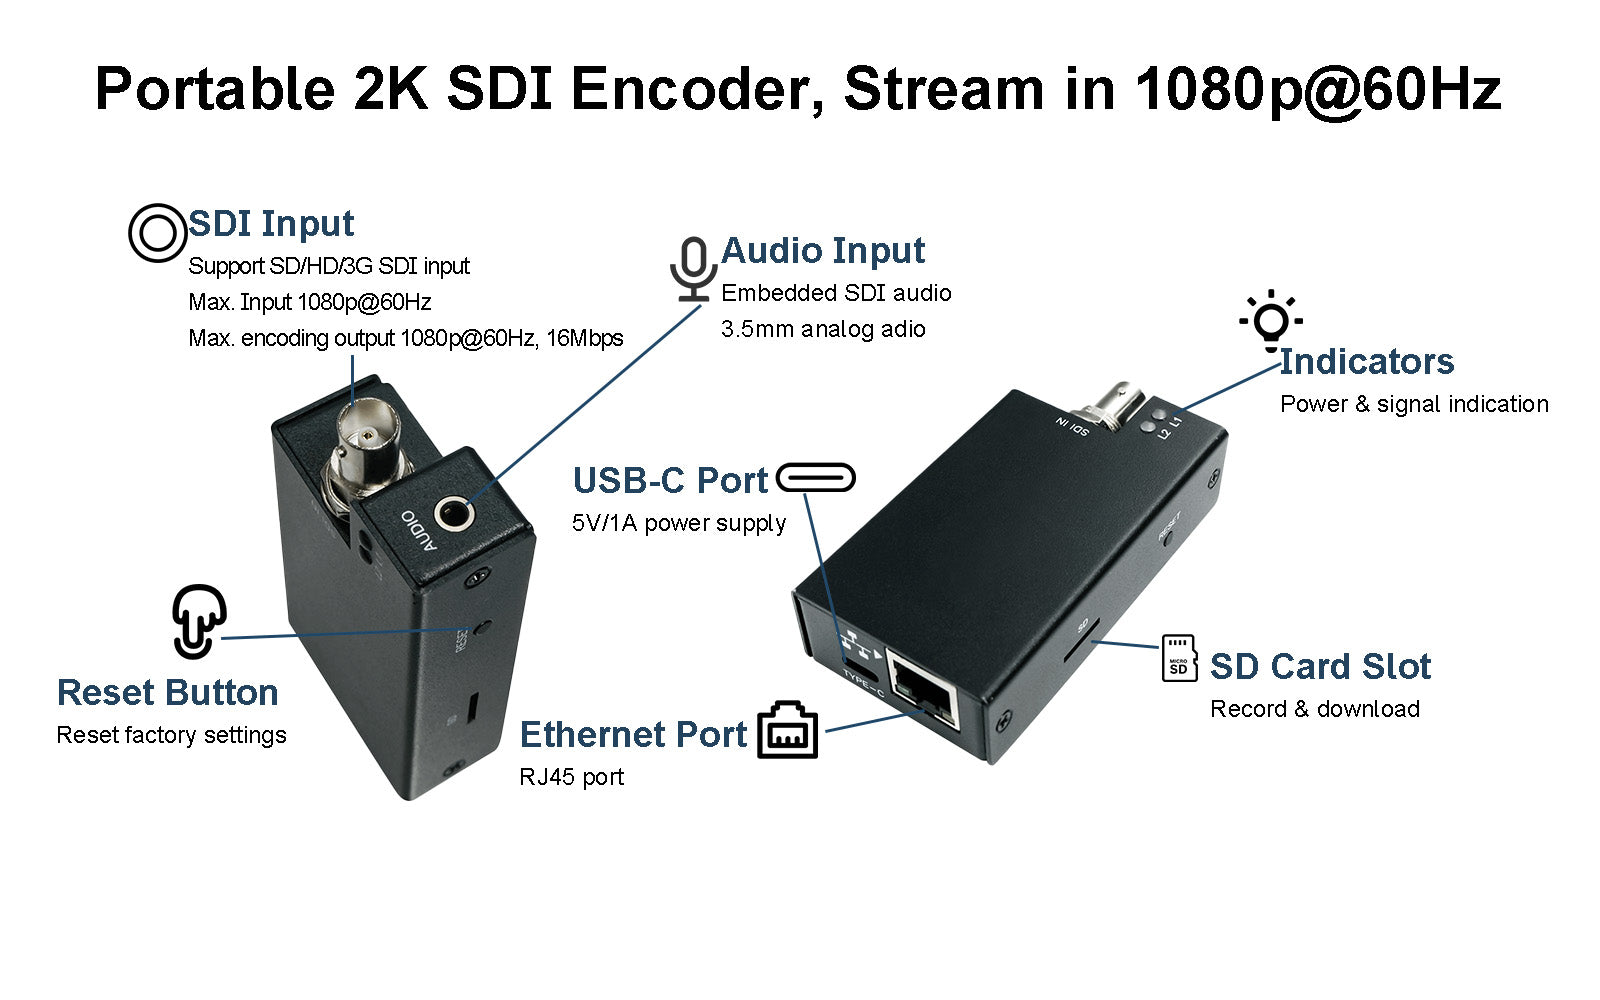 SEV-2K encoder- stream in 1080p@60hz